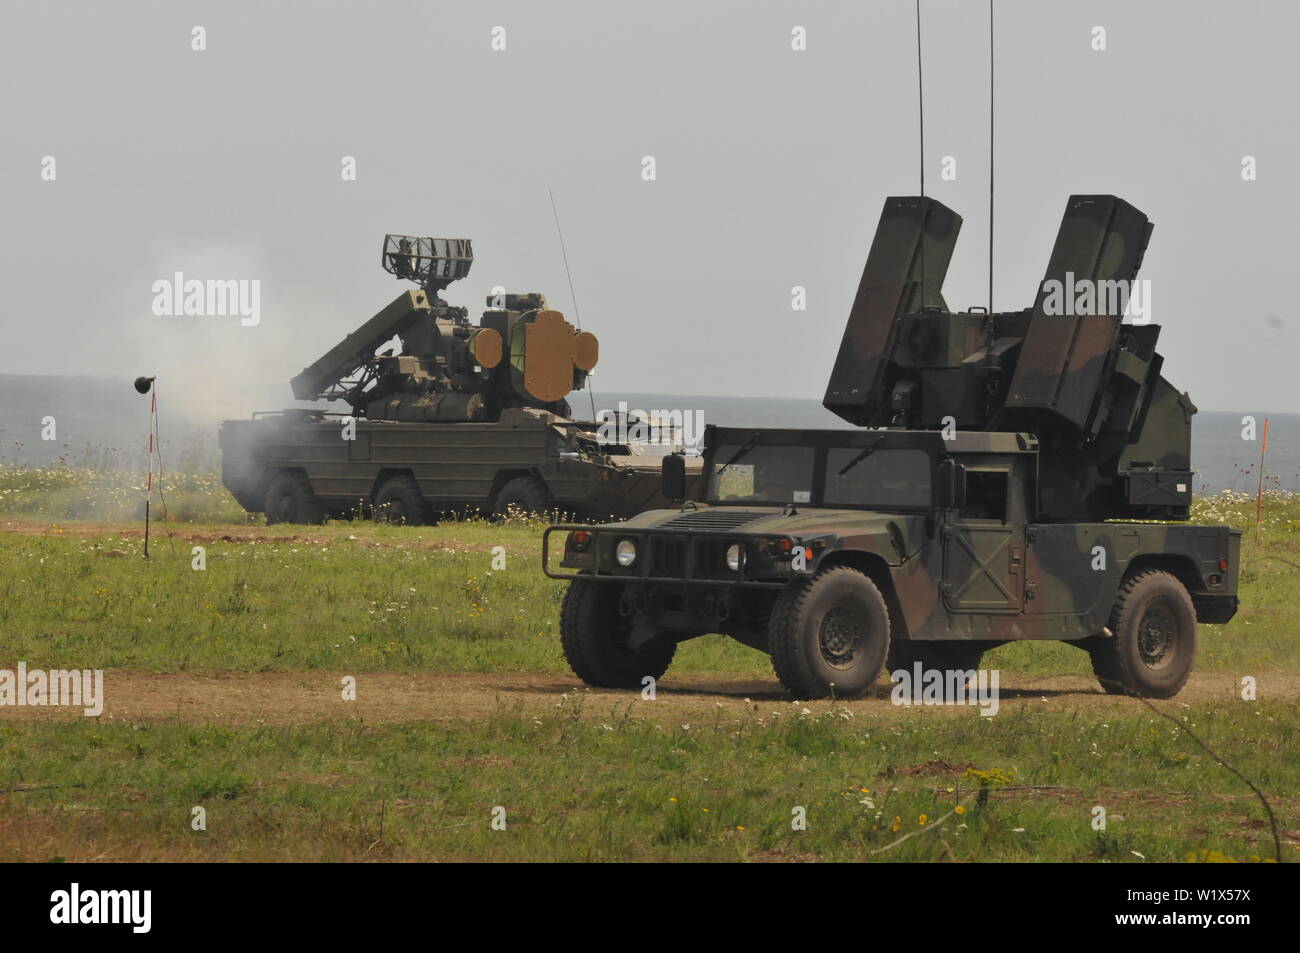 Un système d'armes Avenger durs lors d'un feu de tir de missiles à courte portée près de Shabla, Bulgarie, Juin 12, 2019 19 au cours de l'exercice Shabla. Le système était exploité par des soldats avec 5e Bataillon, 4e Régiment d'artillerie de défense aérienne. SHABLA 19 est un accord bilatéral, conjoint de défense aérienne de l'exercice de tir réel organisé par les forces armées bulgares à Shabla, Bulgarie, du 10 au 14 juin 2019. SHABLA 19 est un conçu pour améliorer la préparation et l'interopérabilité entre la Force aérienne bulgare, de la Marine et de la Force terrestre, et la 10e armée de l'air et commande de la défense antimissile, de l'armée américaine en Europe. Banque D'Images